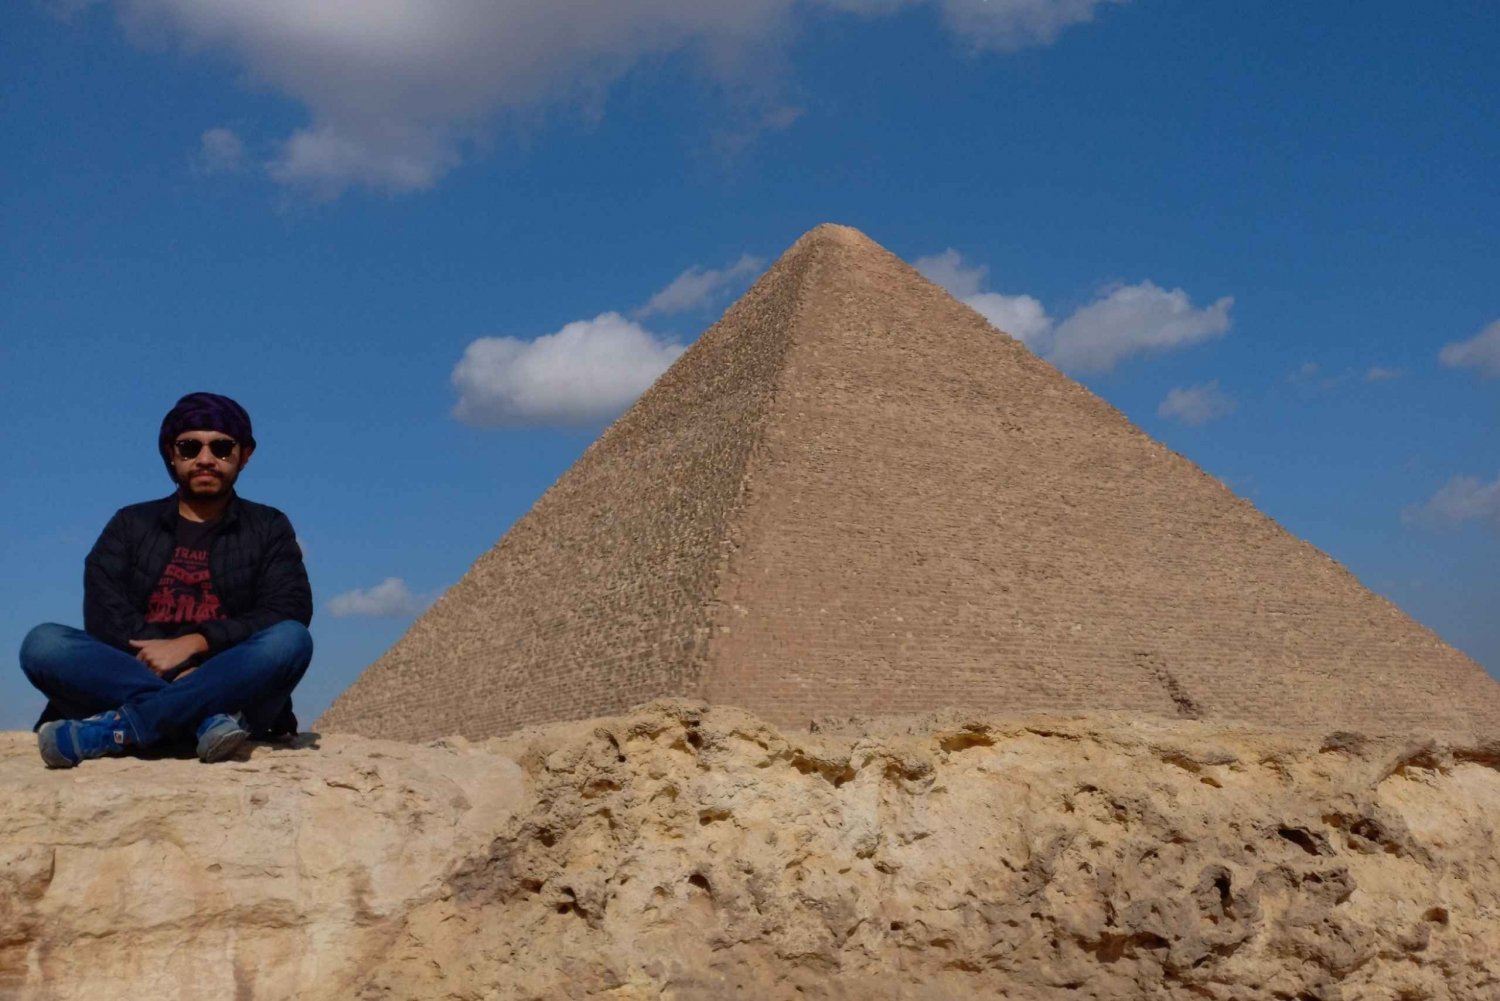 Giza eller Kairo: Pyramiderna Sfinxen Egyptiska museet Tour